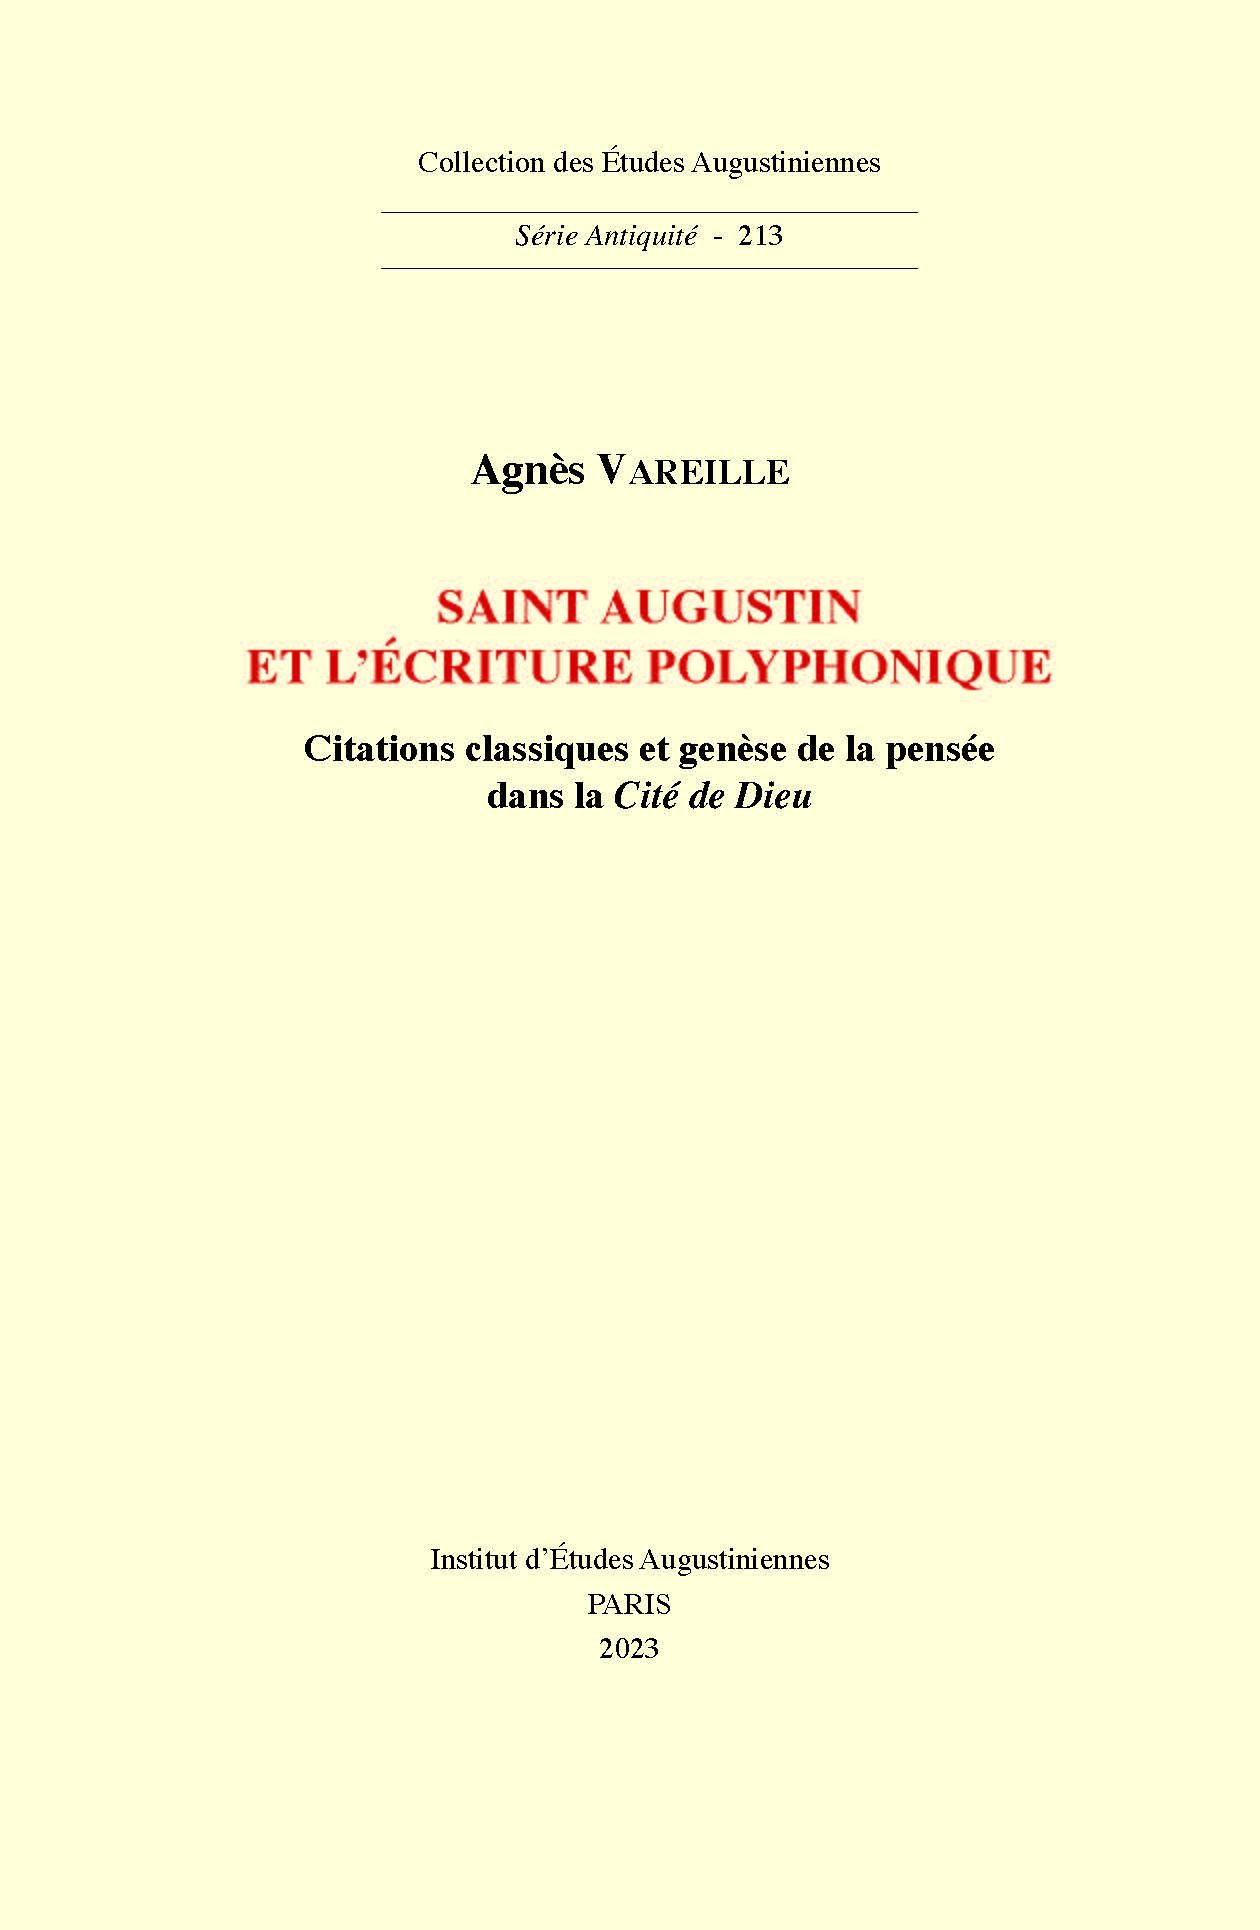 Agnès Vareille, Saint Augustin et l’écriture polyphonique. Citations classiques et genèse de la pensée dans la Cité de Dieu